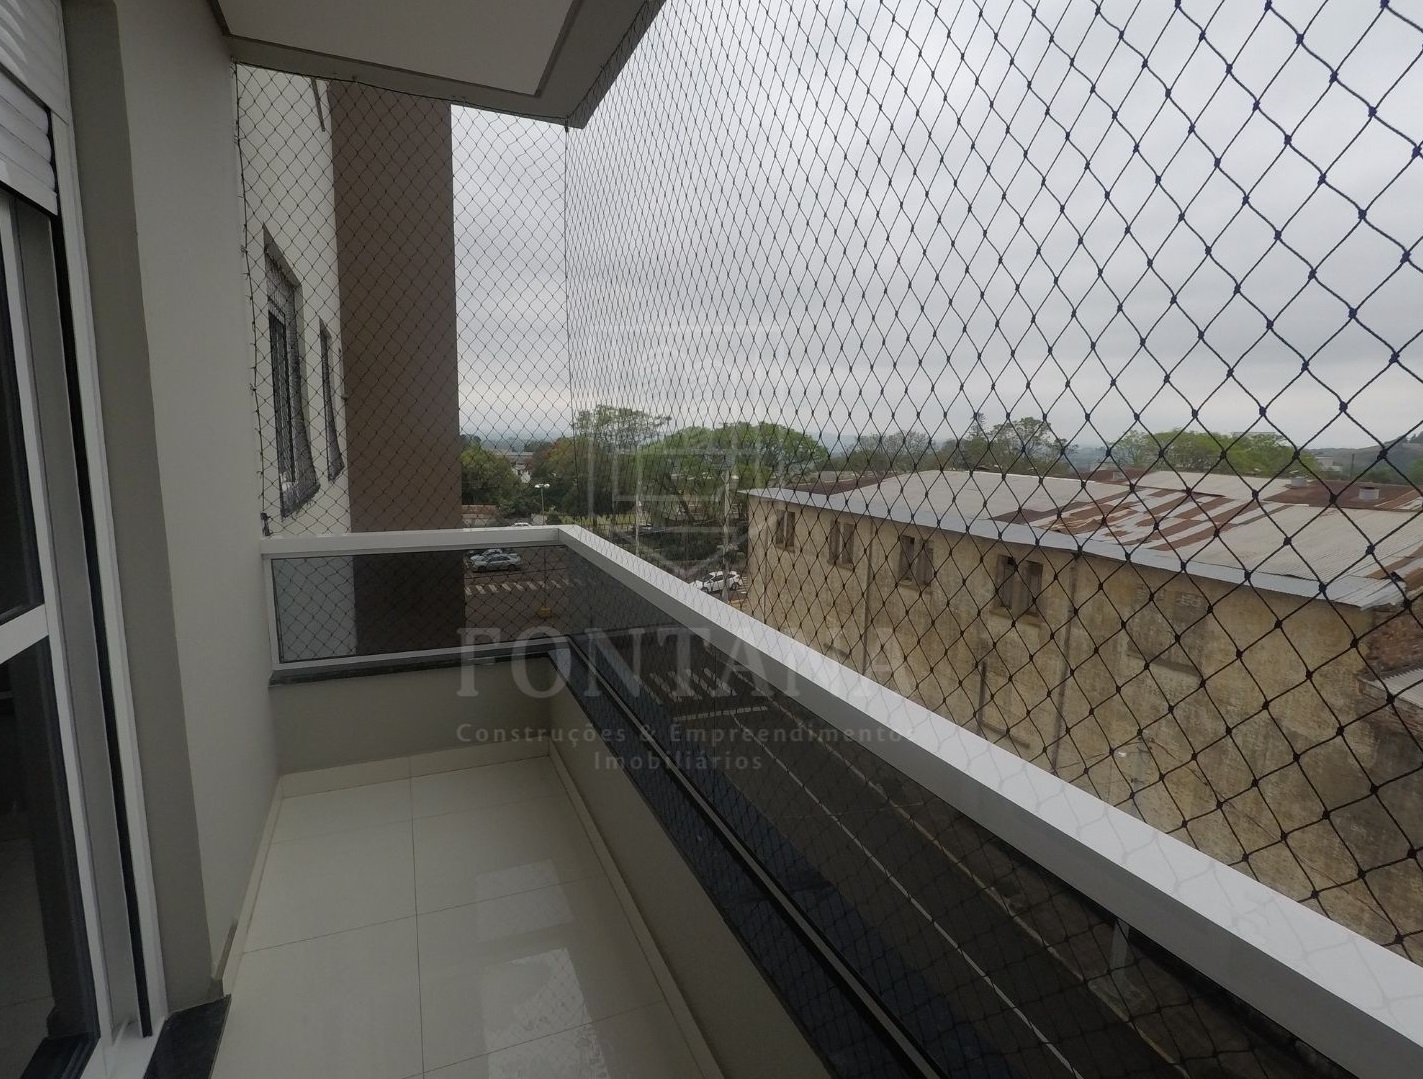 Imagem: Apartamento com 3 dormitórios para locação no Centro de Gaurama/RS - Condomínio Arnaldo Demarco